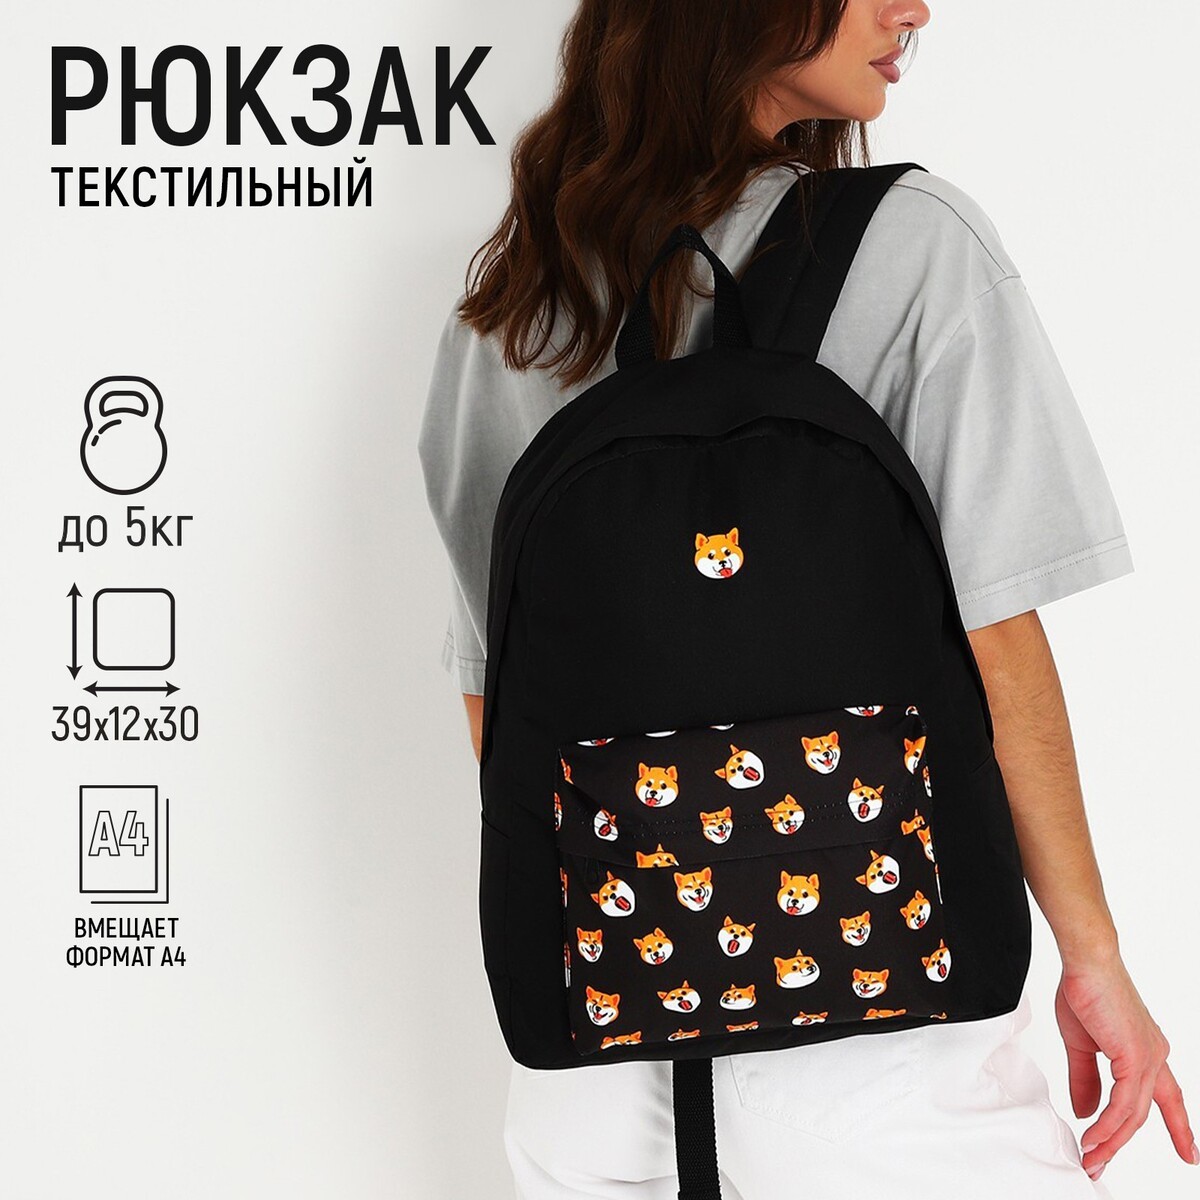 фото Рюкзак текстильный сиба-ину, с карманом, цвет черный nazamok